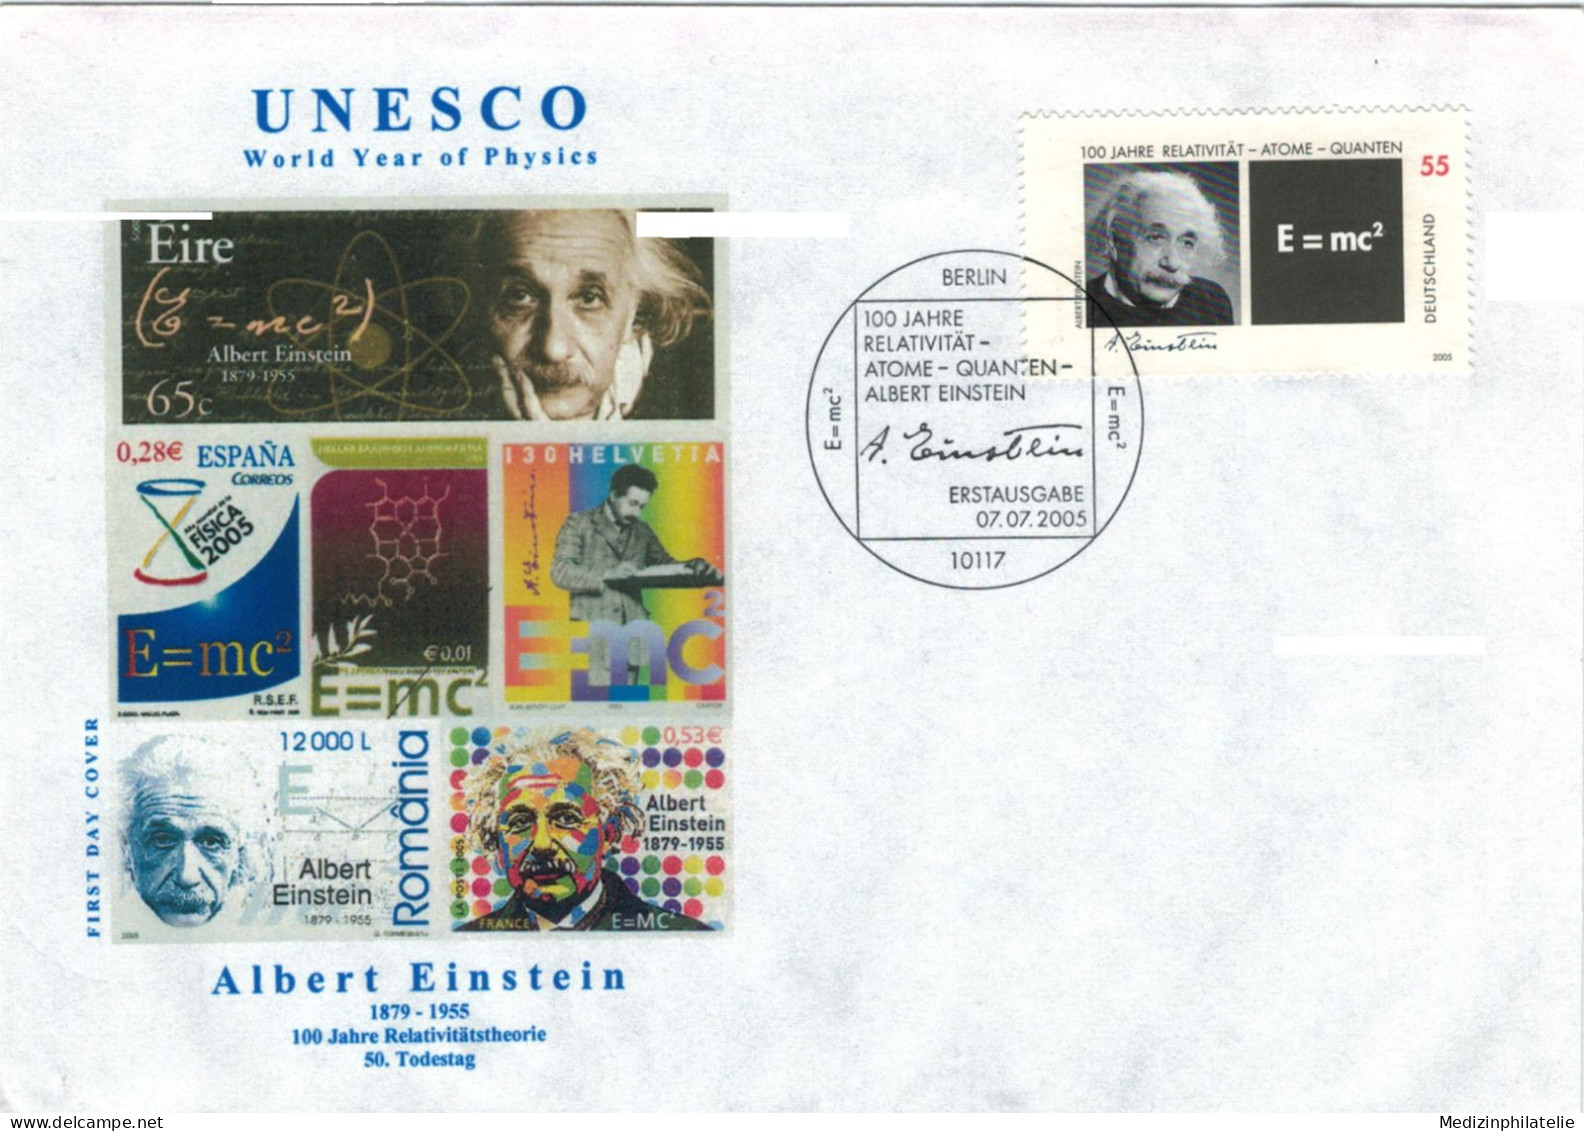 Albert Einstein Schweizerisch-US-amerikanischer Theoretischer Physiker - Relativitätstheorie Atome Quanten 2005 - Albert Einstein